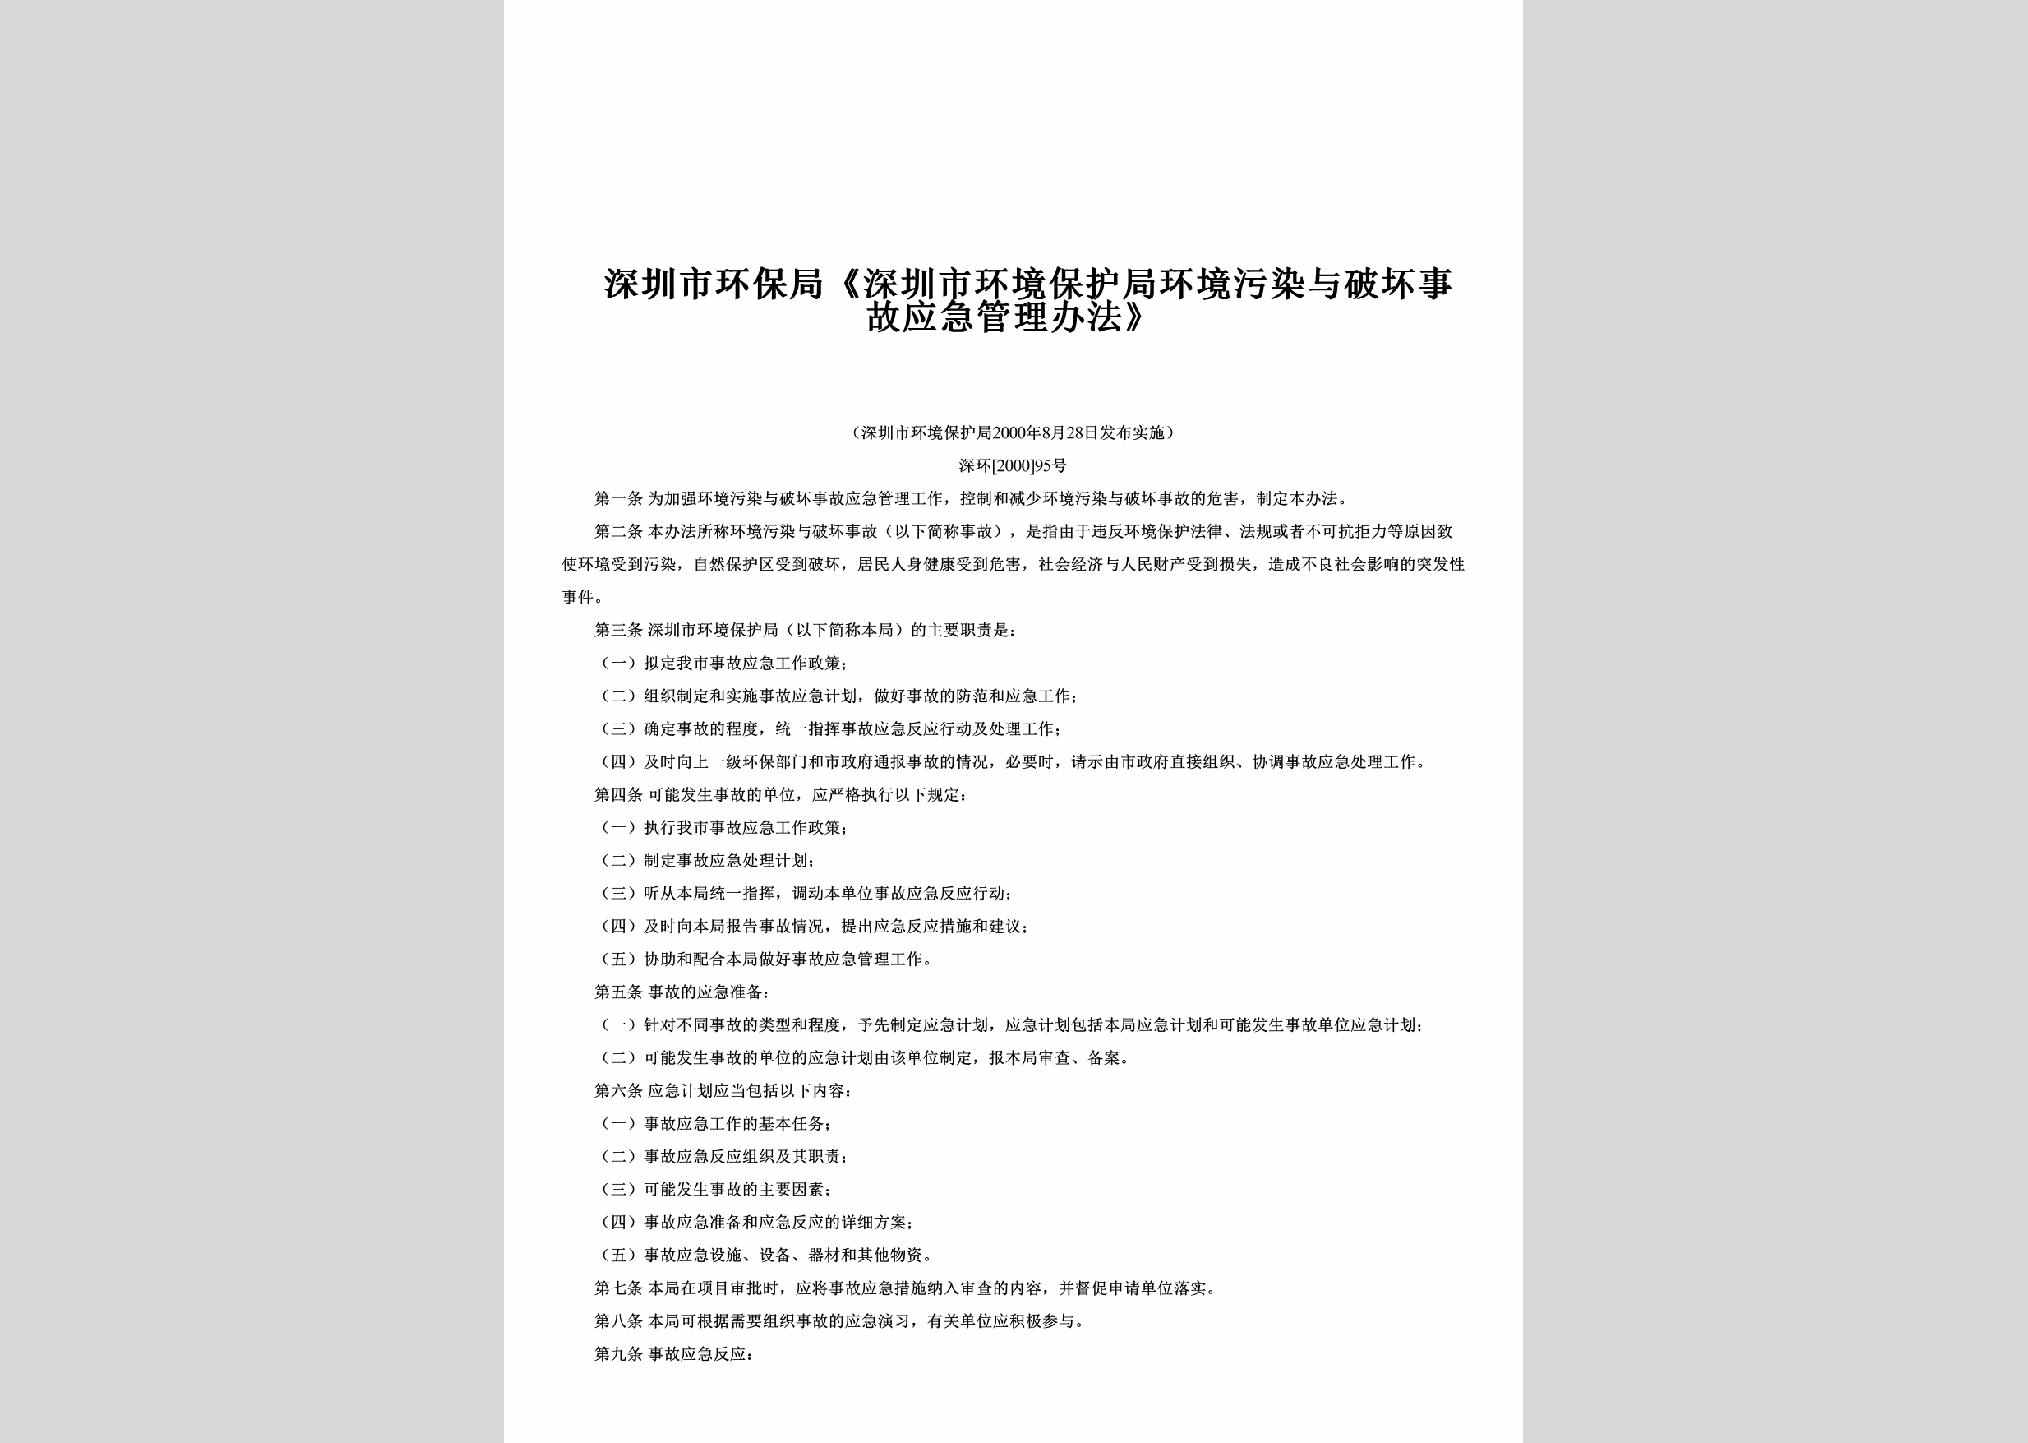 深环[2000]95号：《深圳市环境保护局环境污染与破坏事故应急管理办法》